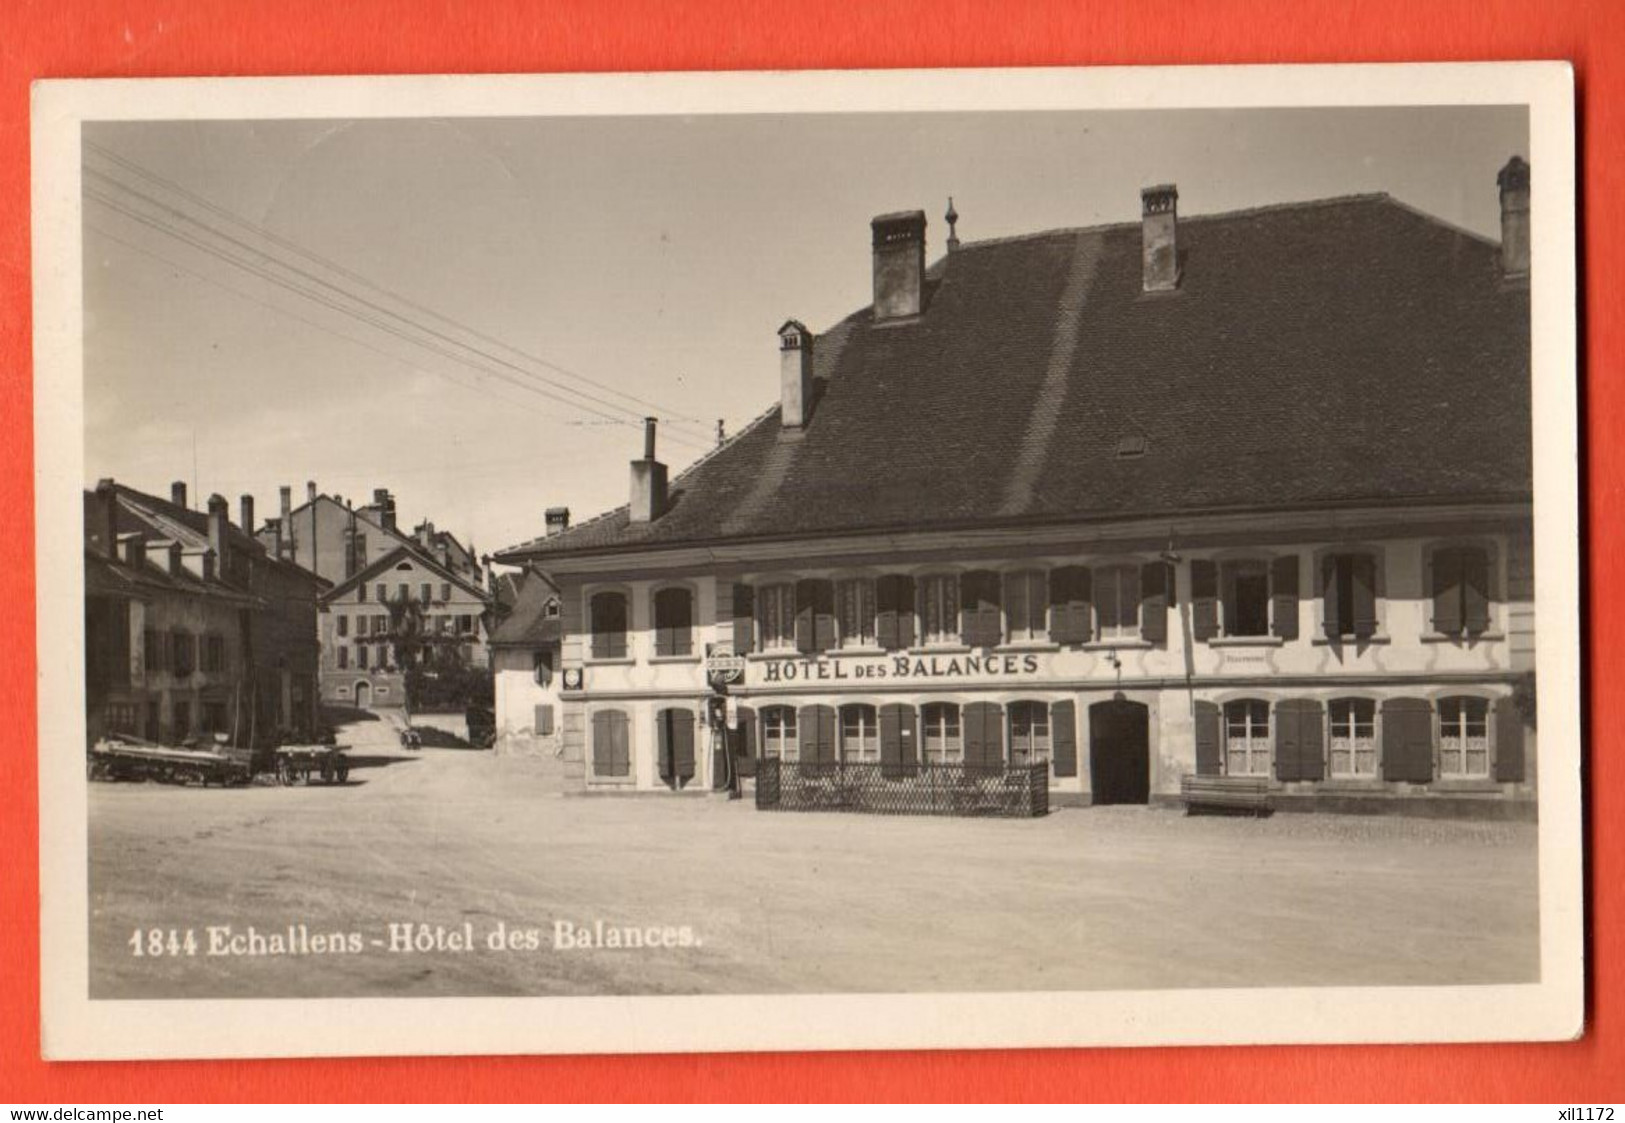 ZPJ-08 Echallens Hotel Des Balances   Cachet Goumens-la-Ville  1930  Phototypie 1844 - Échallens